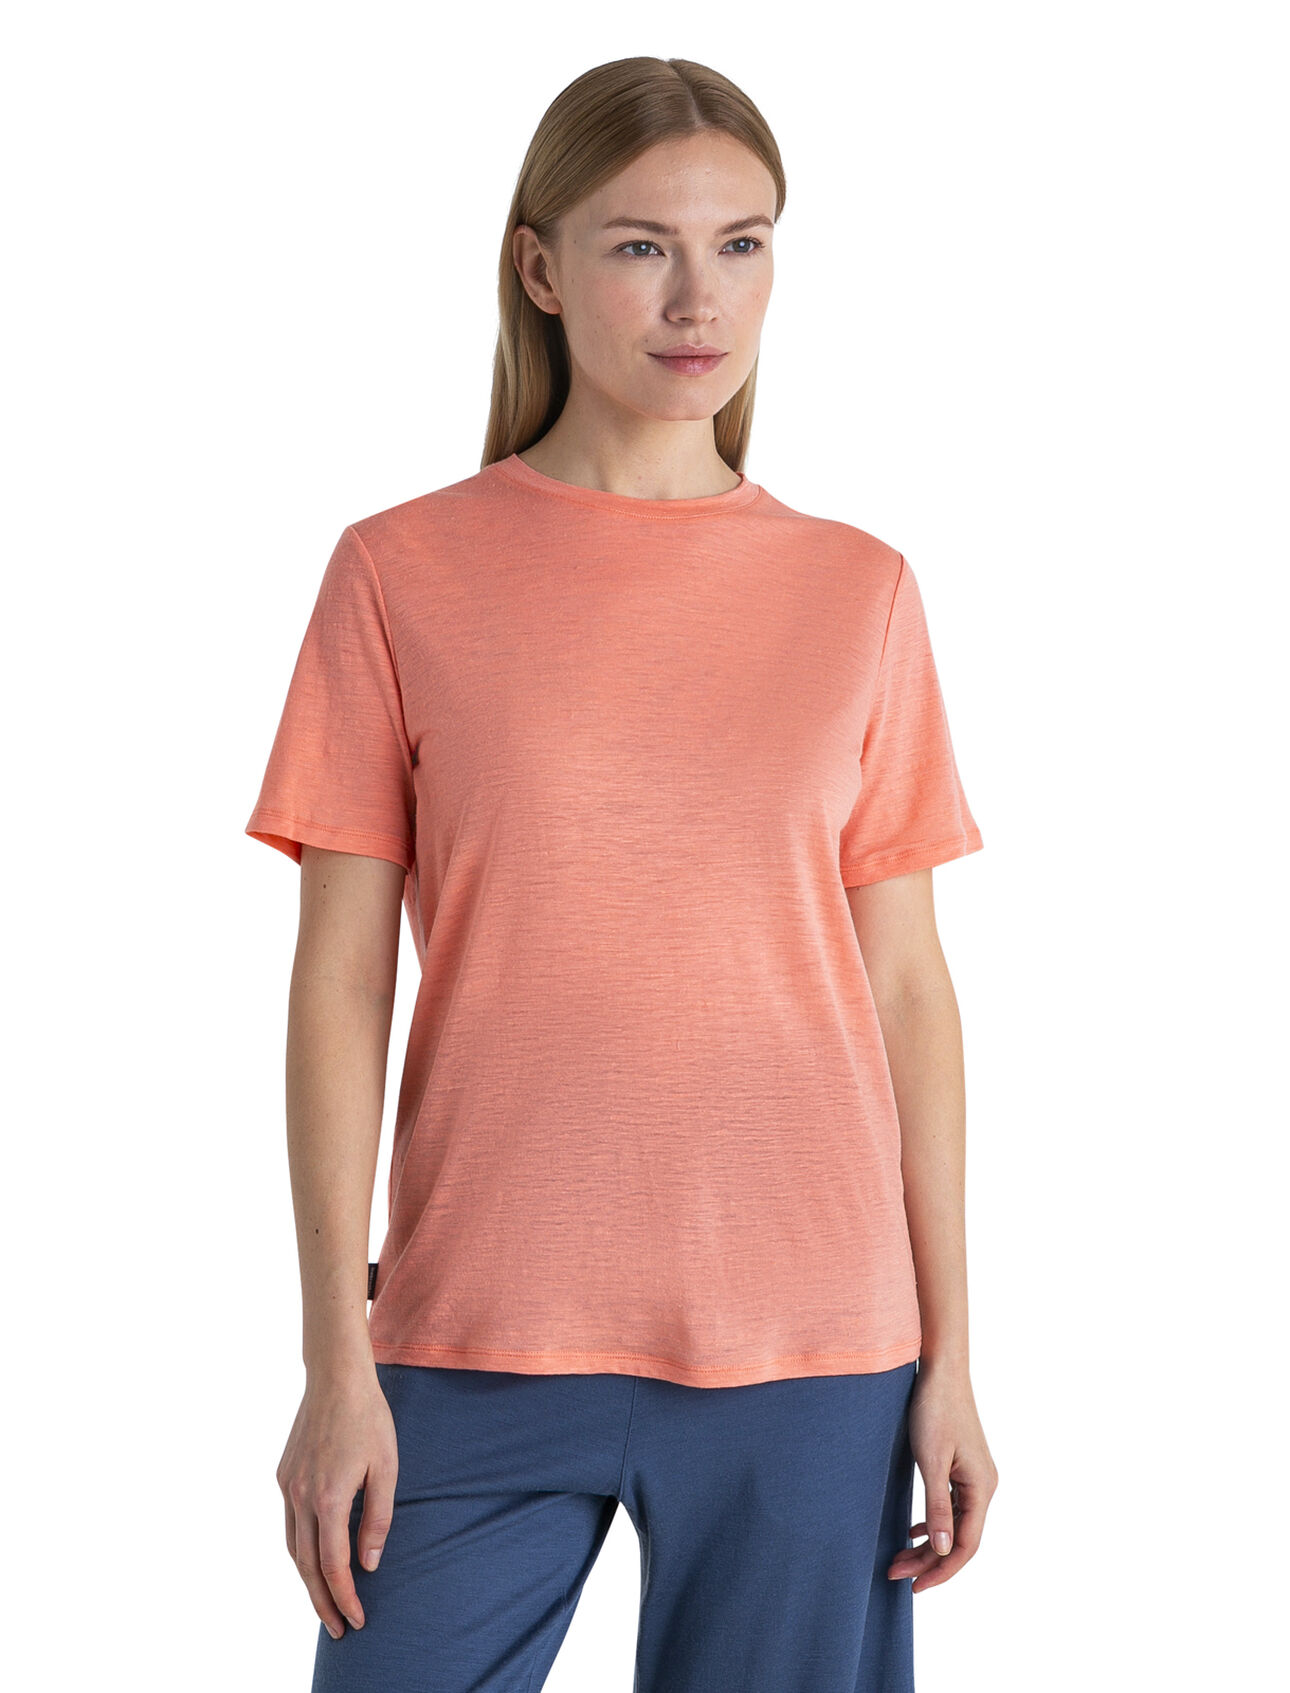 Dámské Tričko s krátkým rukávem Merino Linen Lehké tričko s krátkým rukávem Merino Linen je vyrobeno z jemné směsi merino vlny a lnu, a stane se tak základním kouskem, který se postará o vaše každodenní pohodlí a styl. 